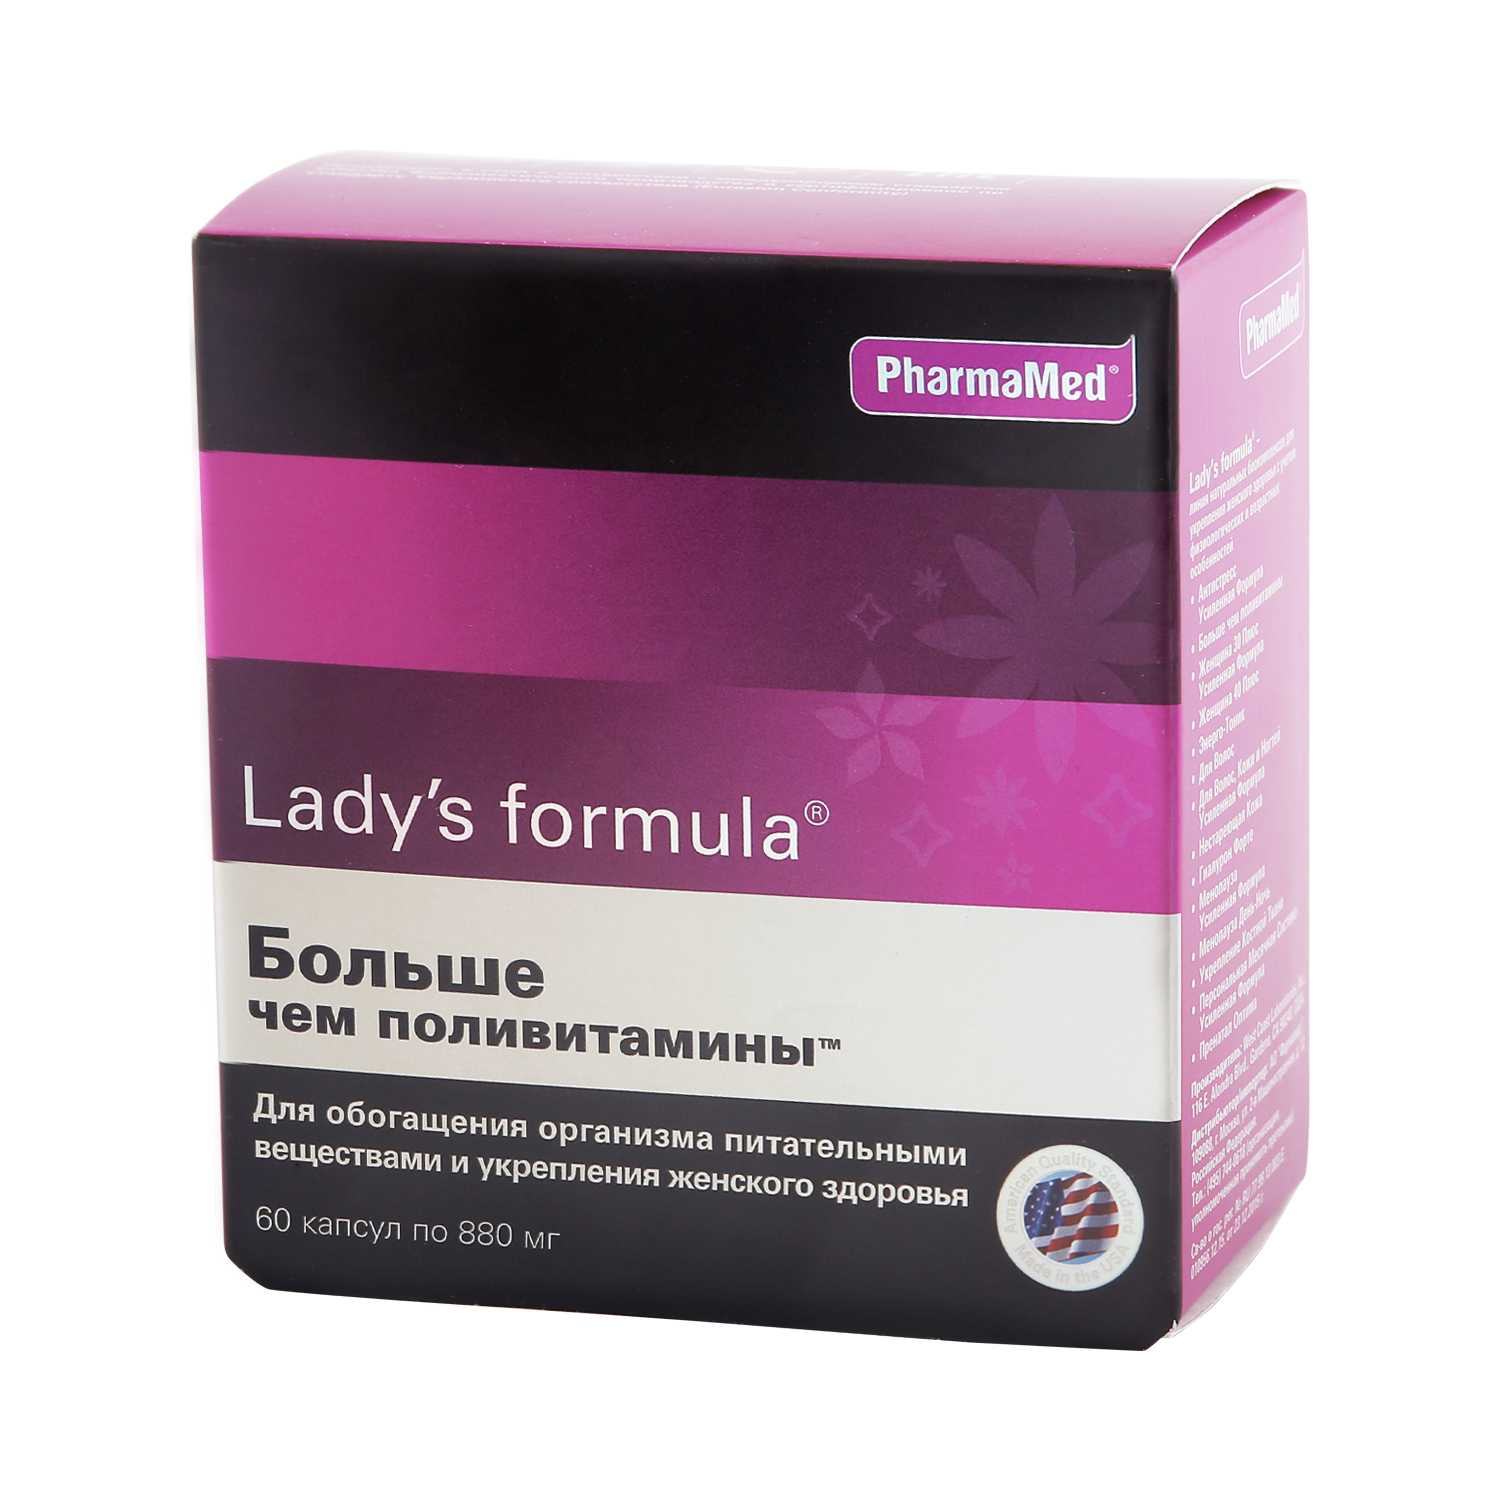 Ледис менопауза состав. PHARMAMED Lady's Formula. Витамины для женщин ледис формула. Lady's Formula больше чем поливитамины состав. Американские витамины для женщин ледис формула.